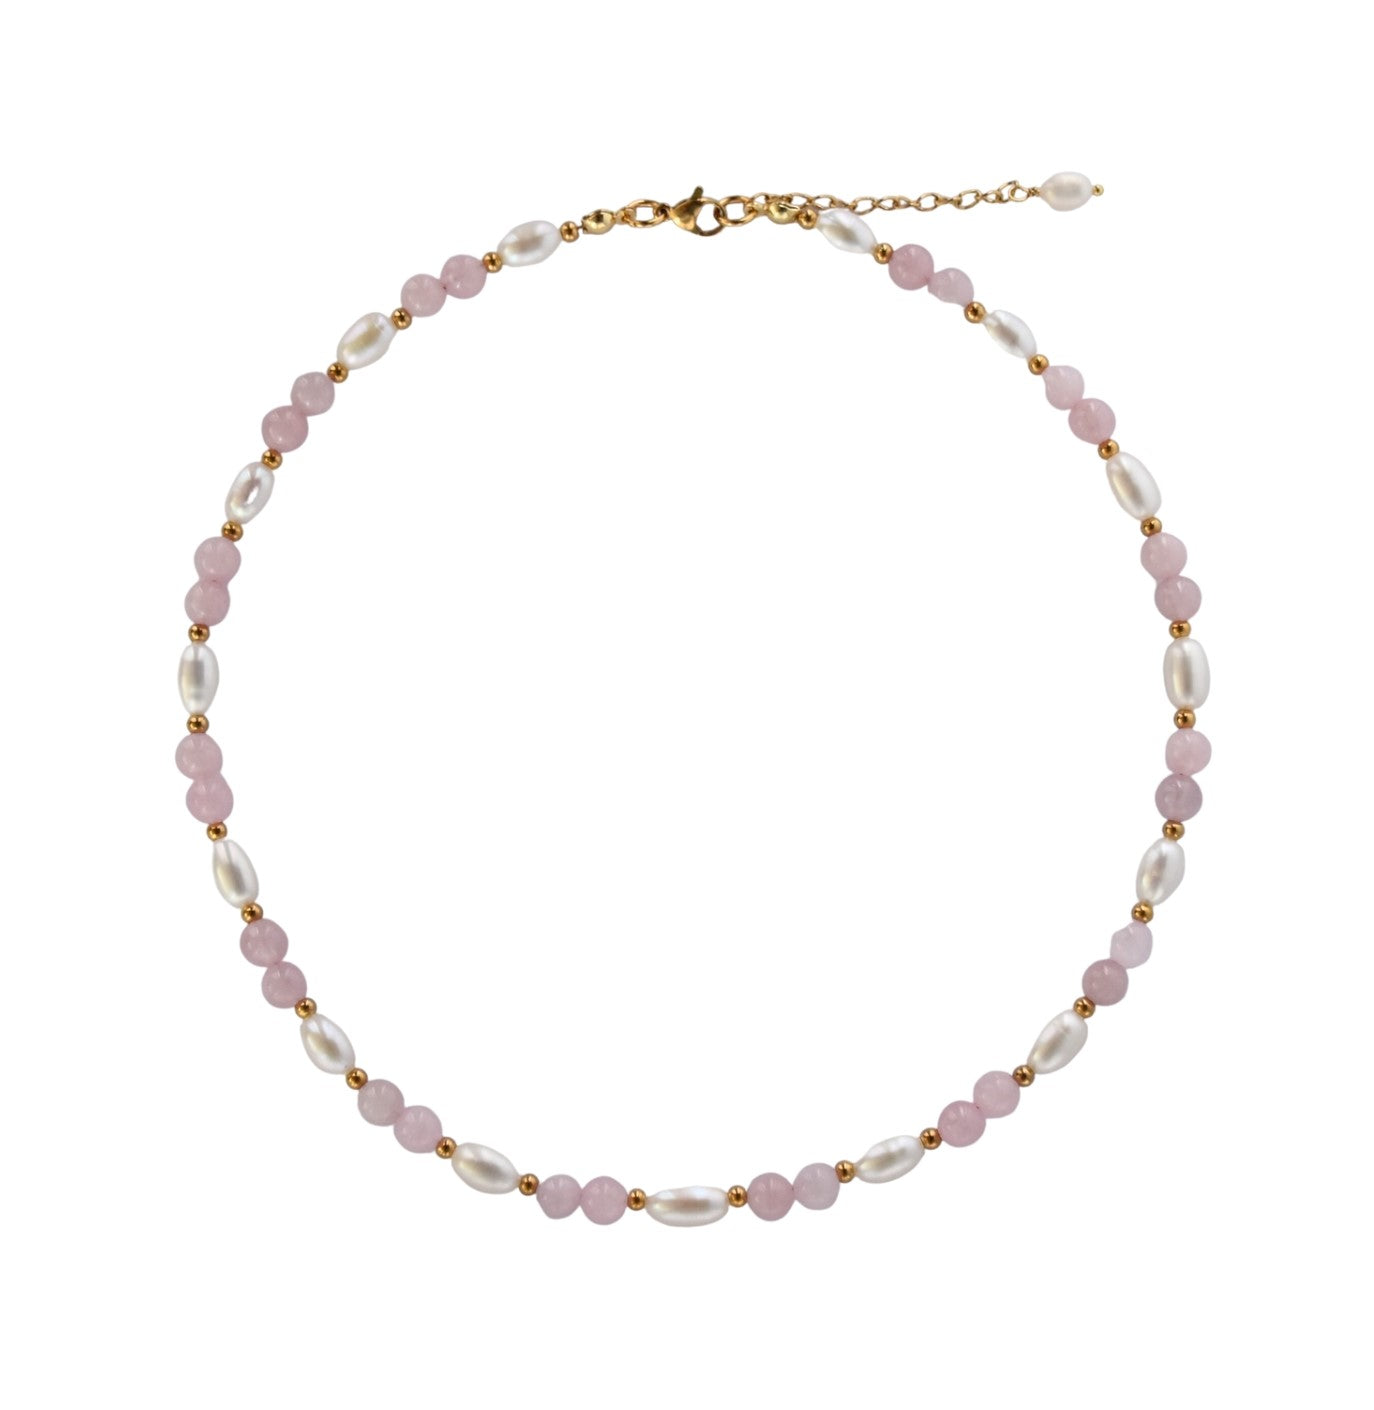 Pearls and rose quartz necklace